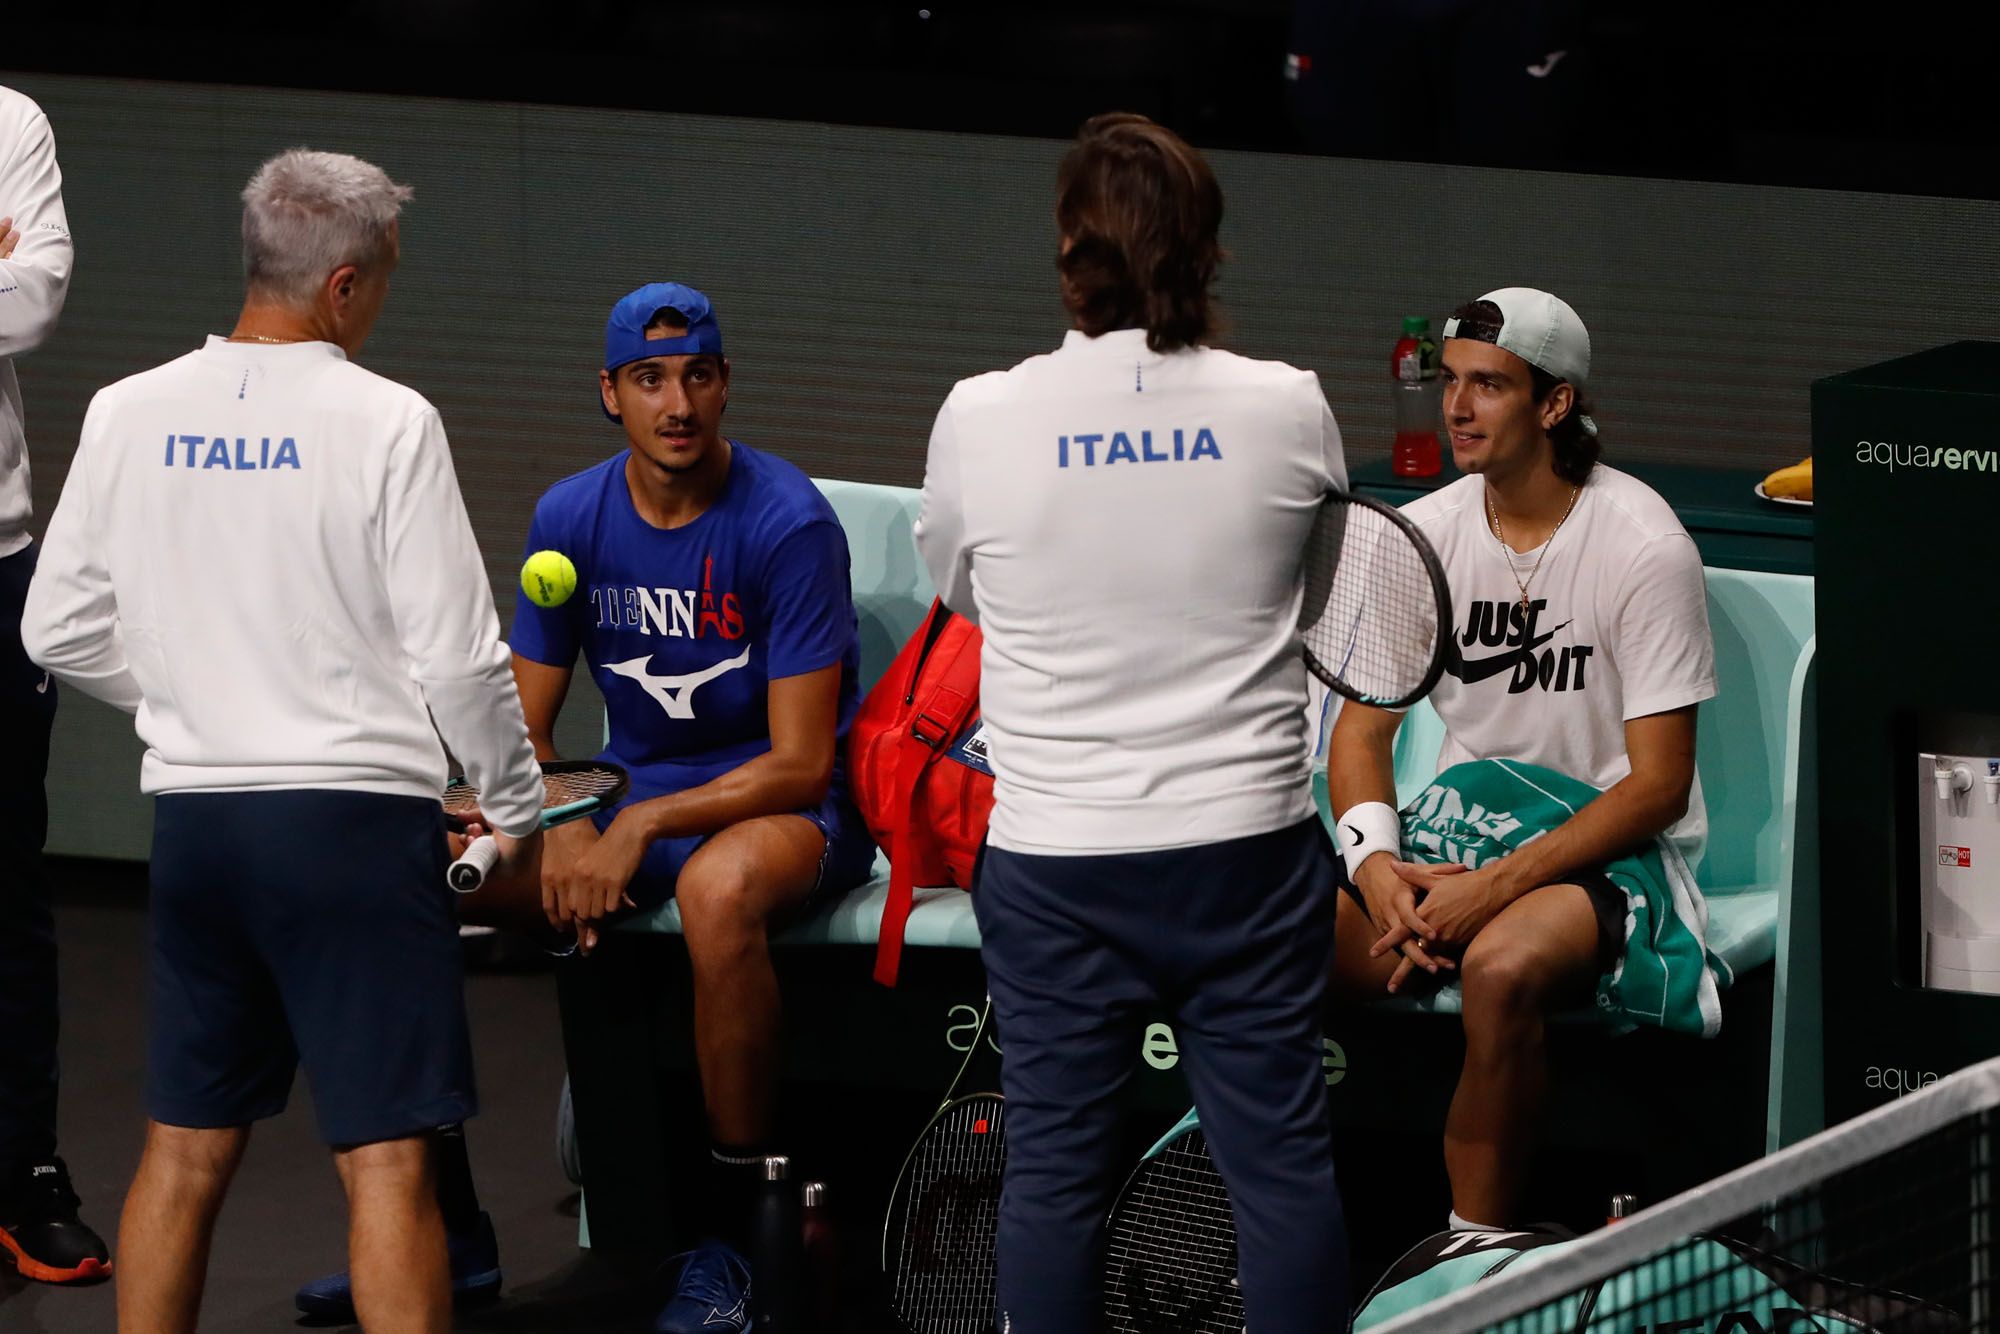 Italia, entrenando en el Carpena de cara a la Copa Davis de Málaga.